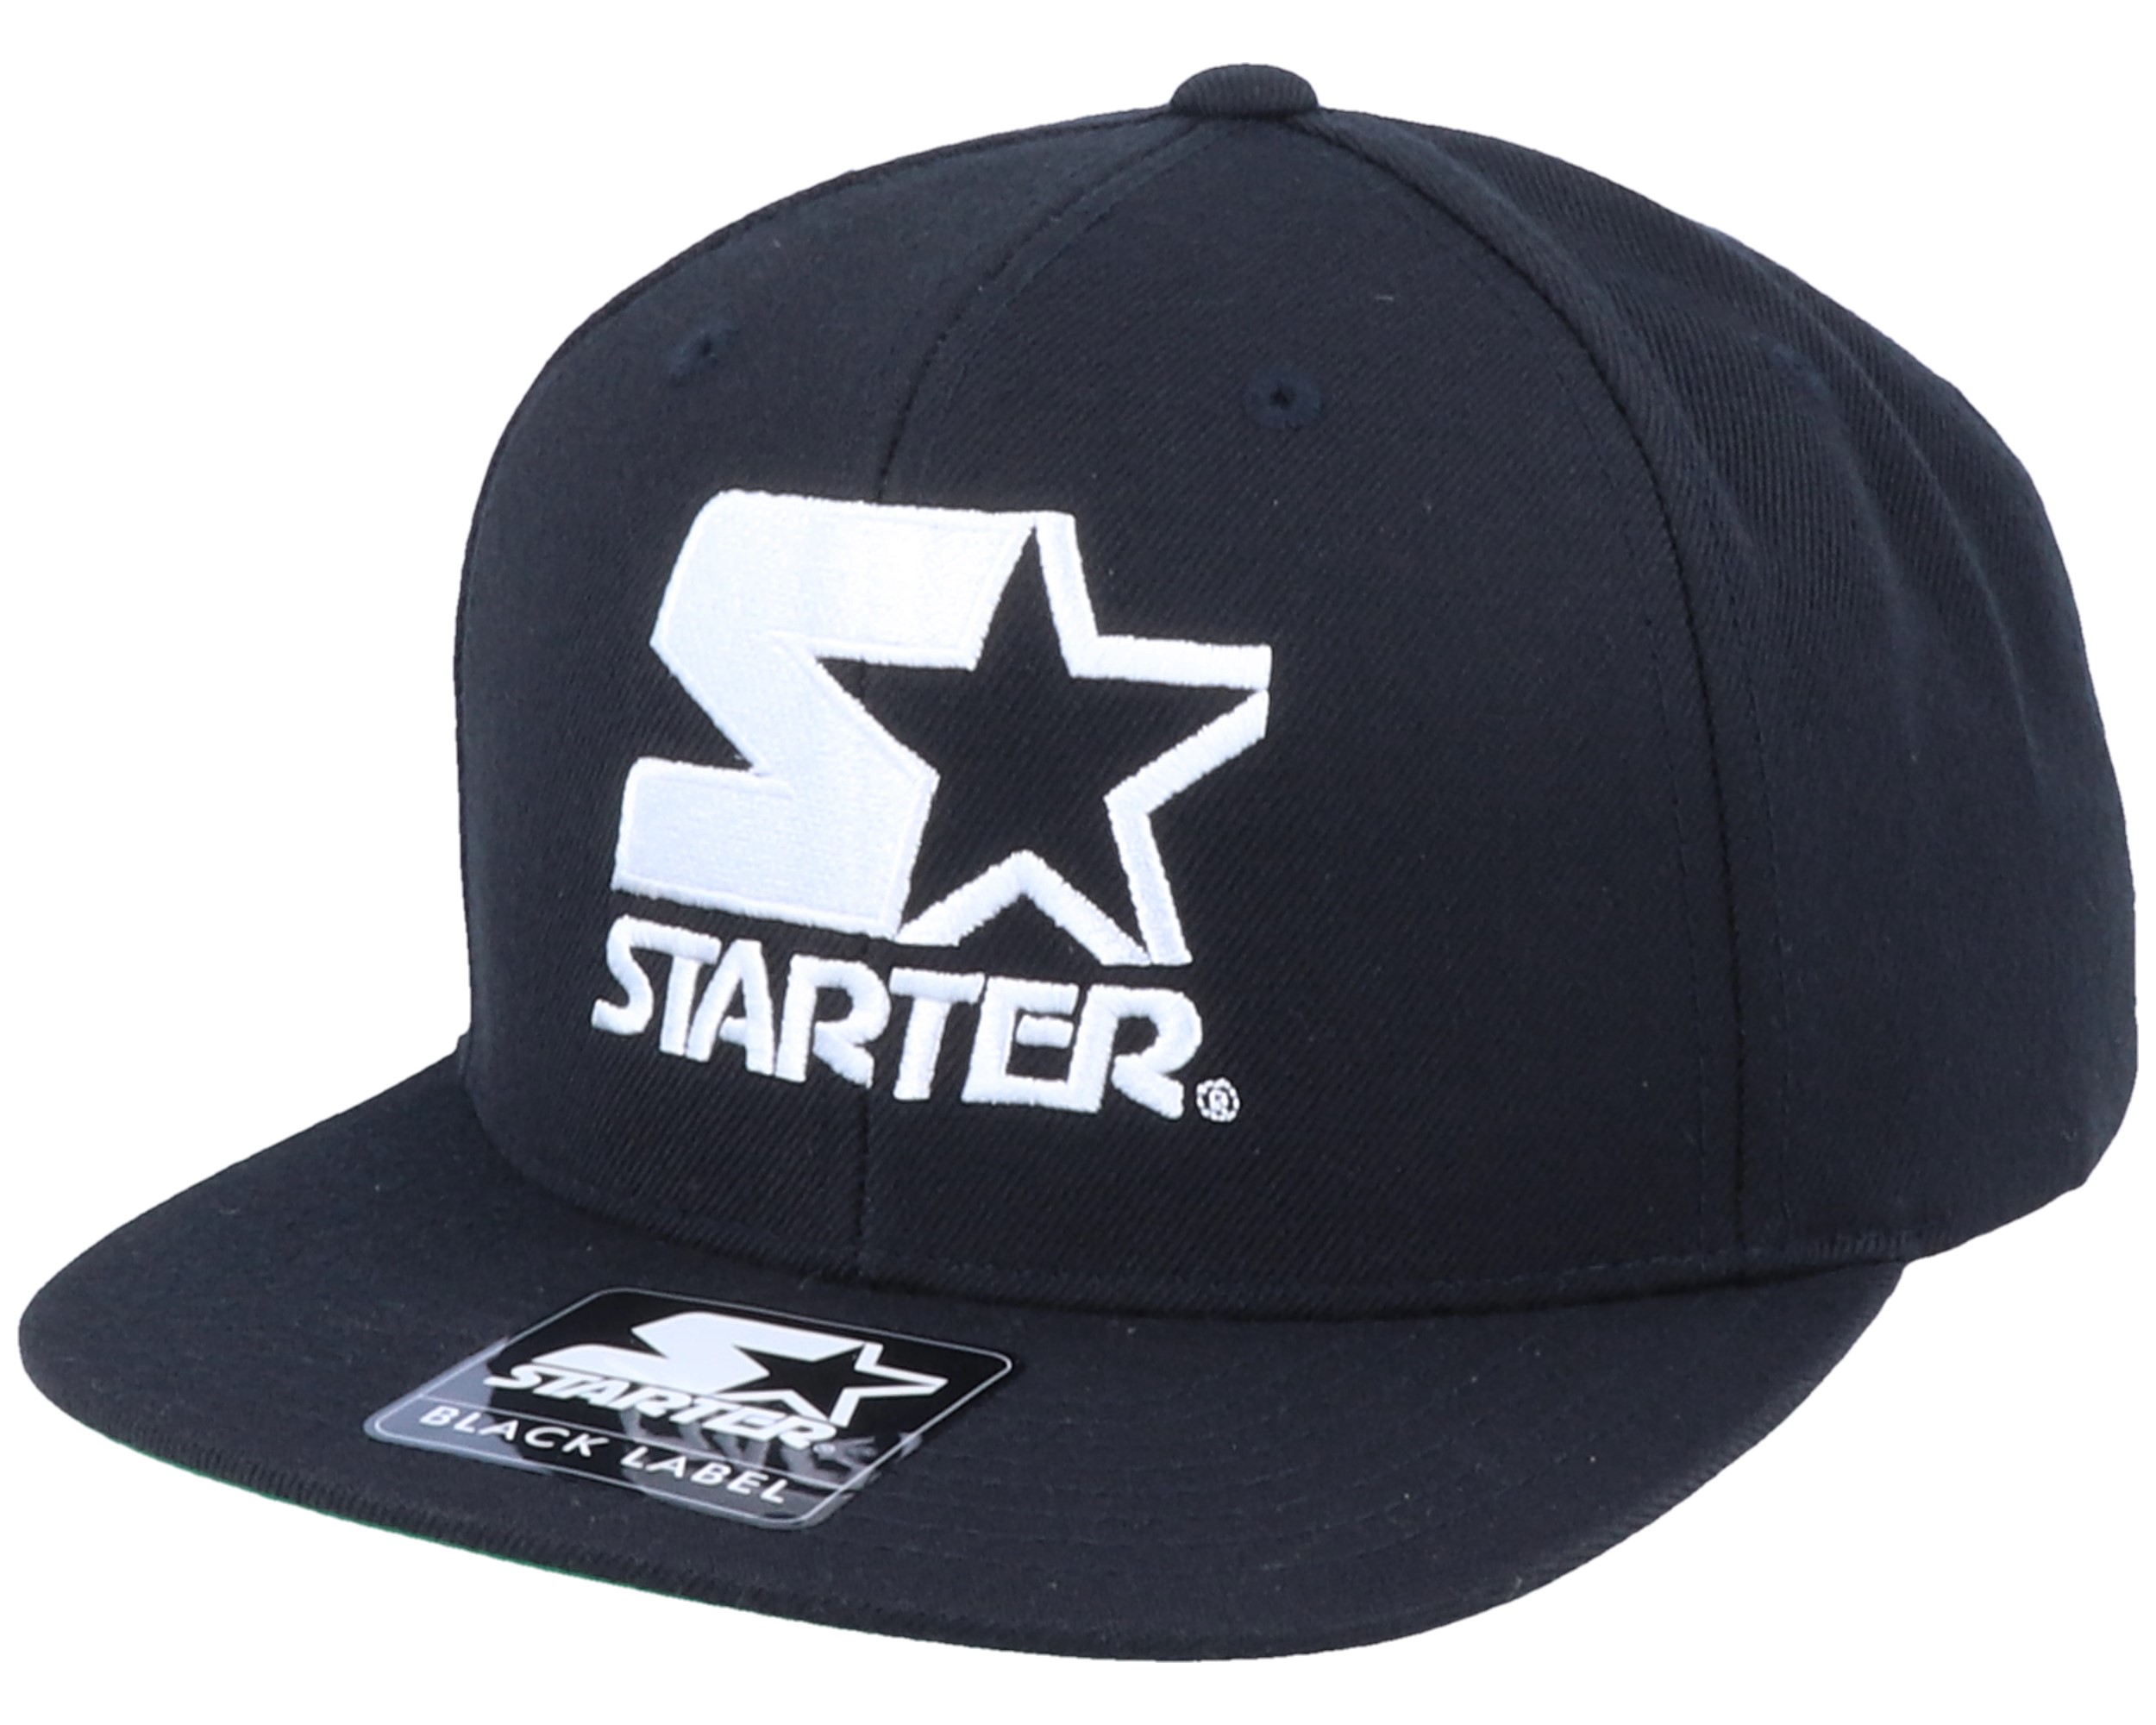 HATS – Starter